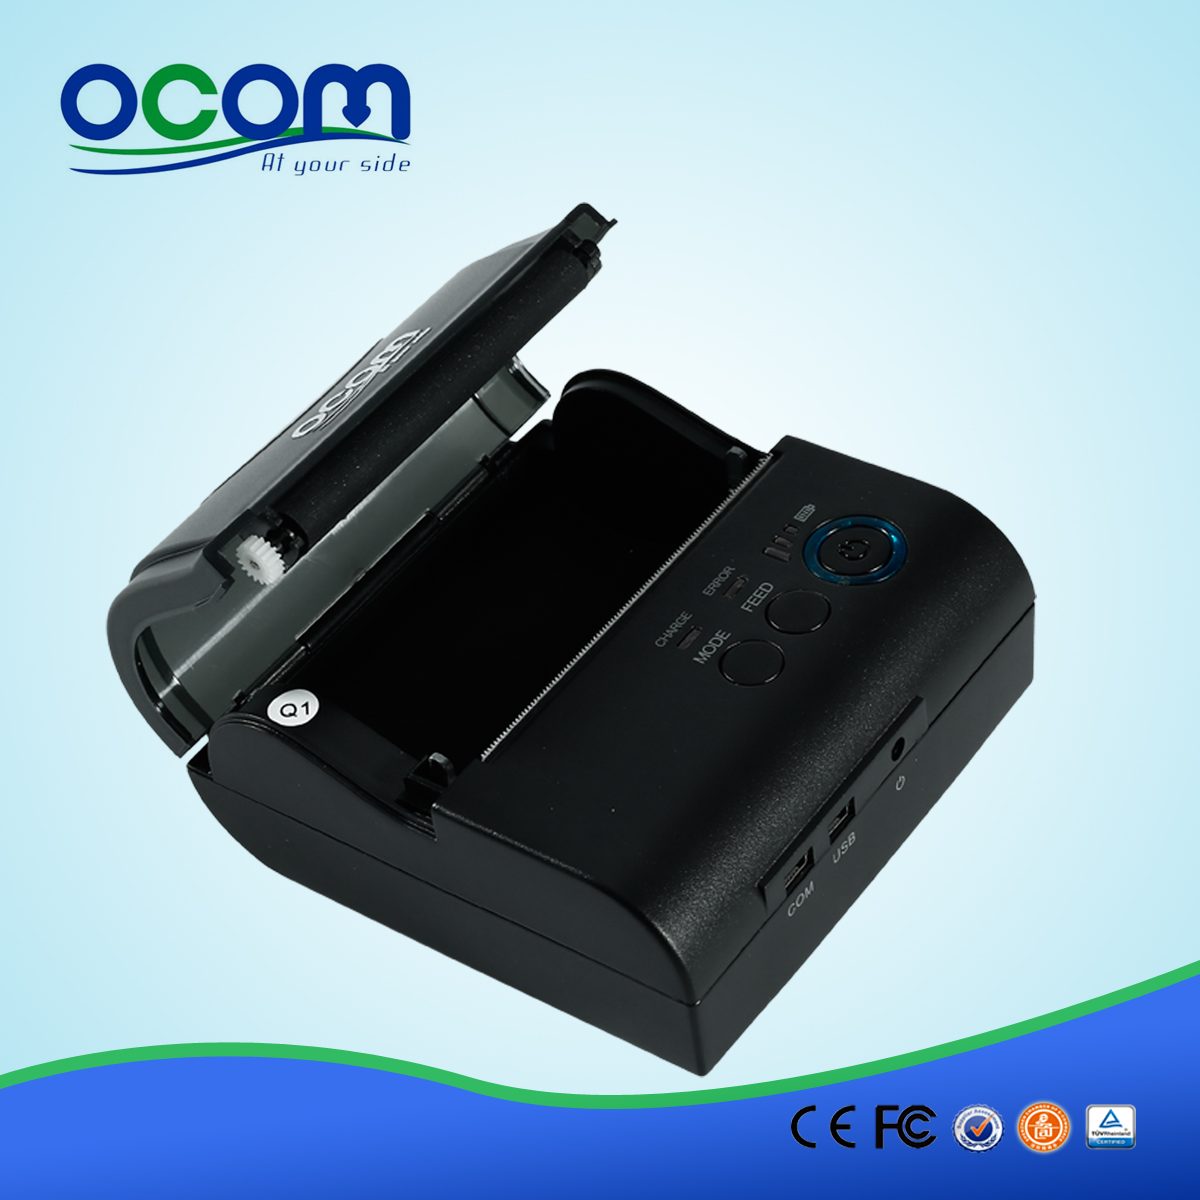 OCPP-M082: OCOM Gorący sprzedaje tanie 80mm drukarki pokwitowań cieplna